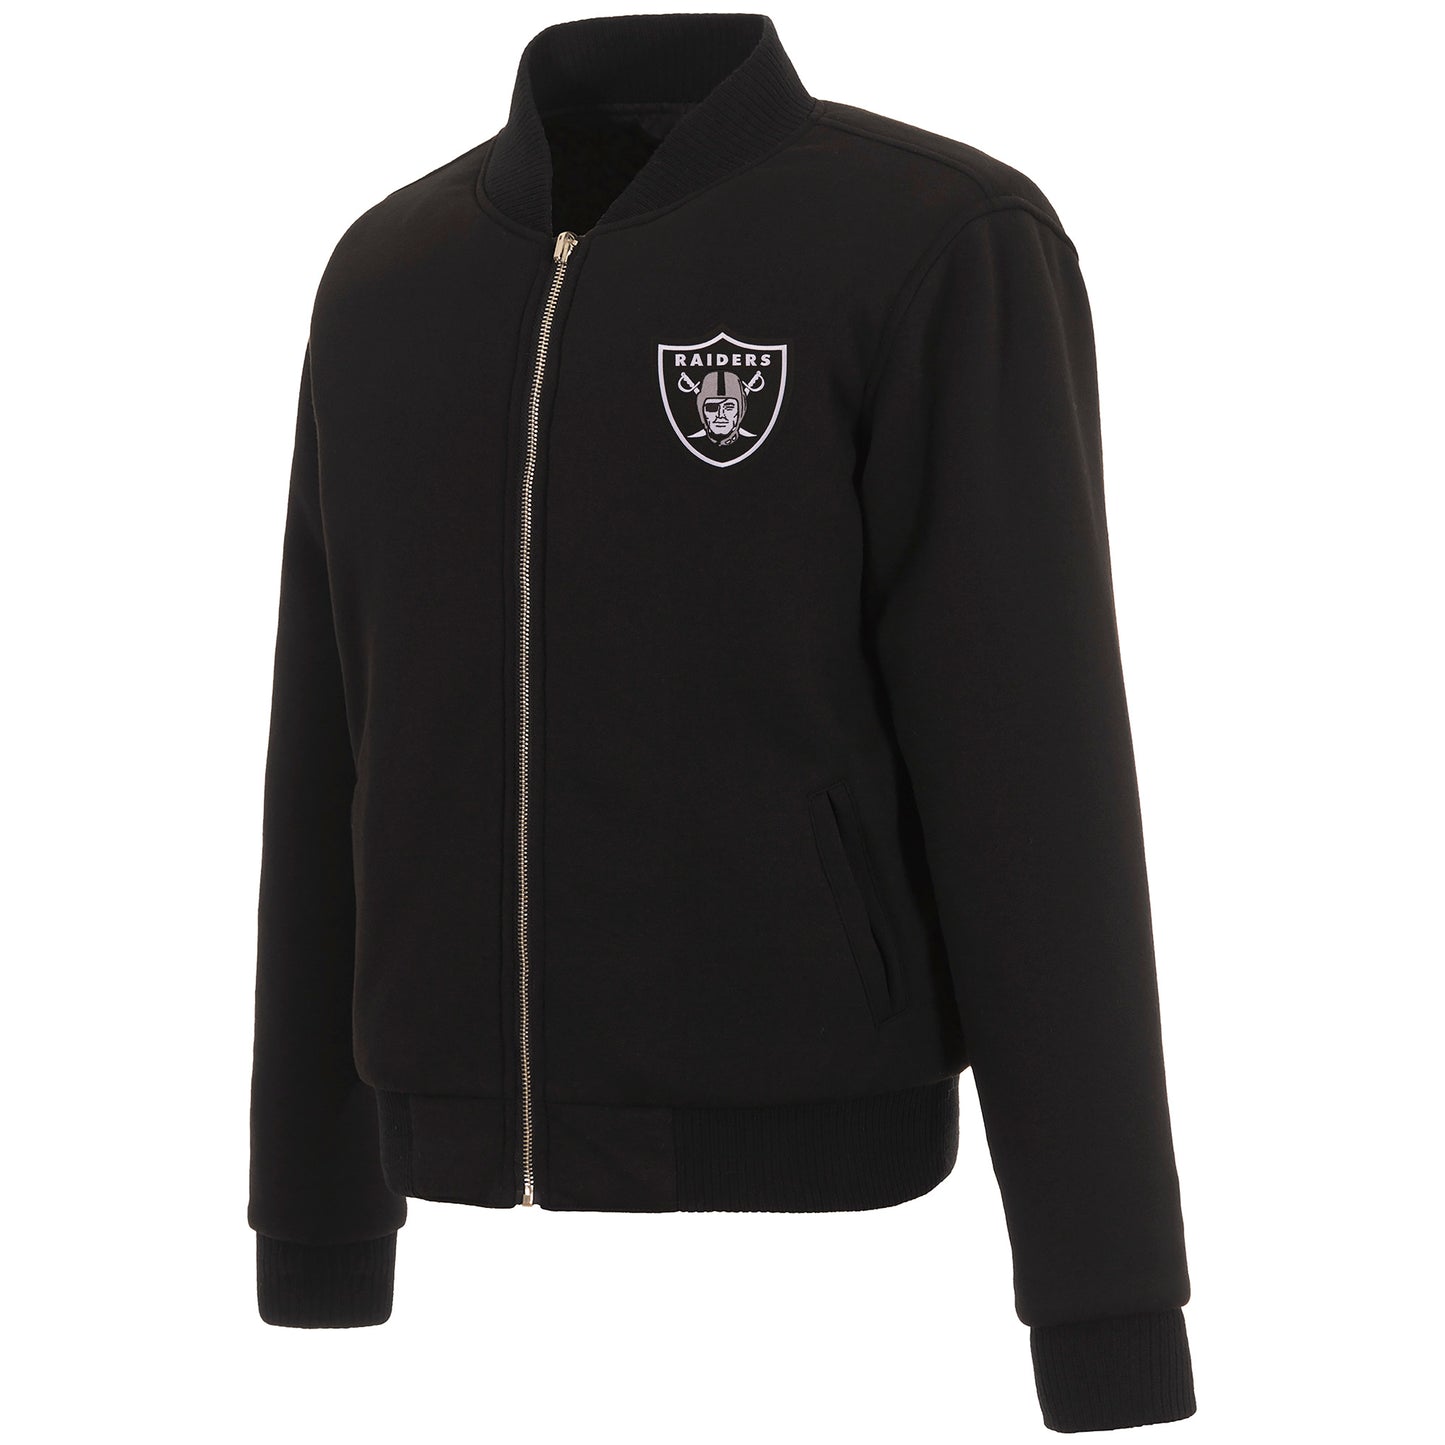 Las Vegas Raiders Ladies Reversible Fleece Jacket